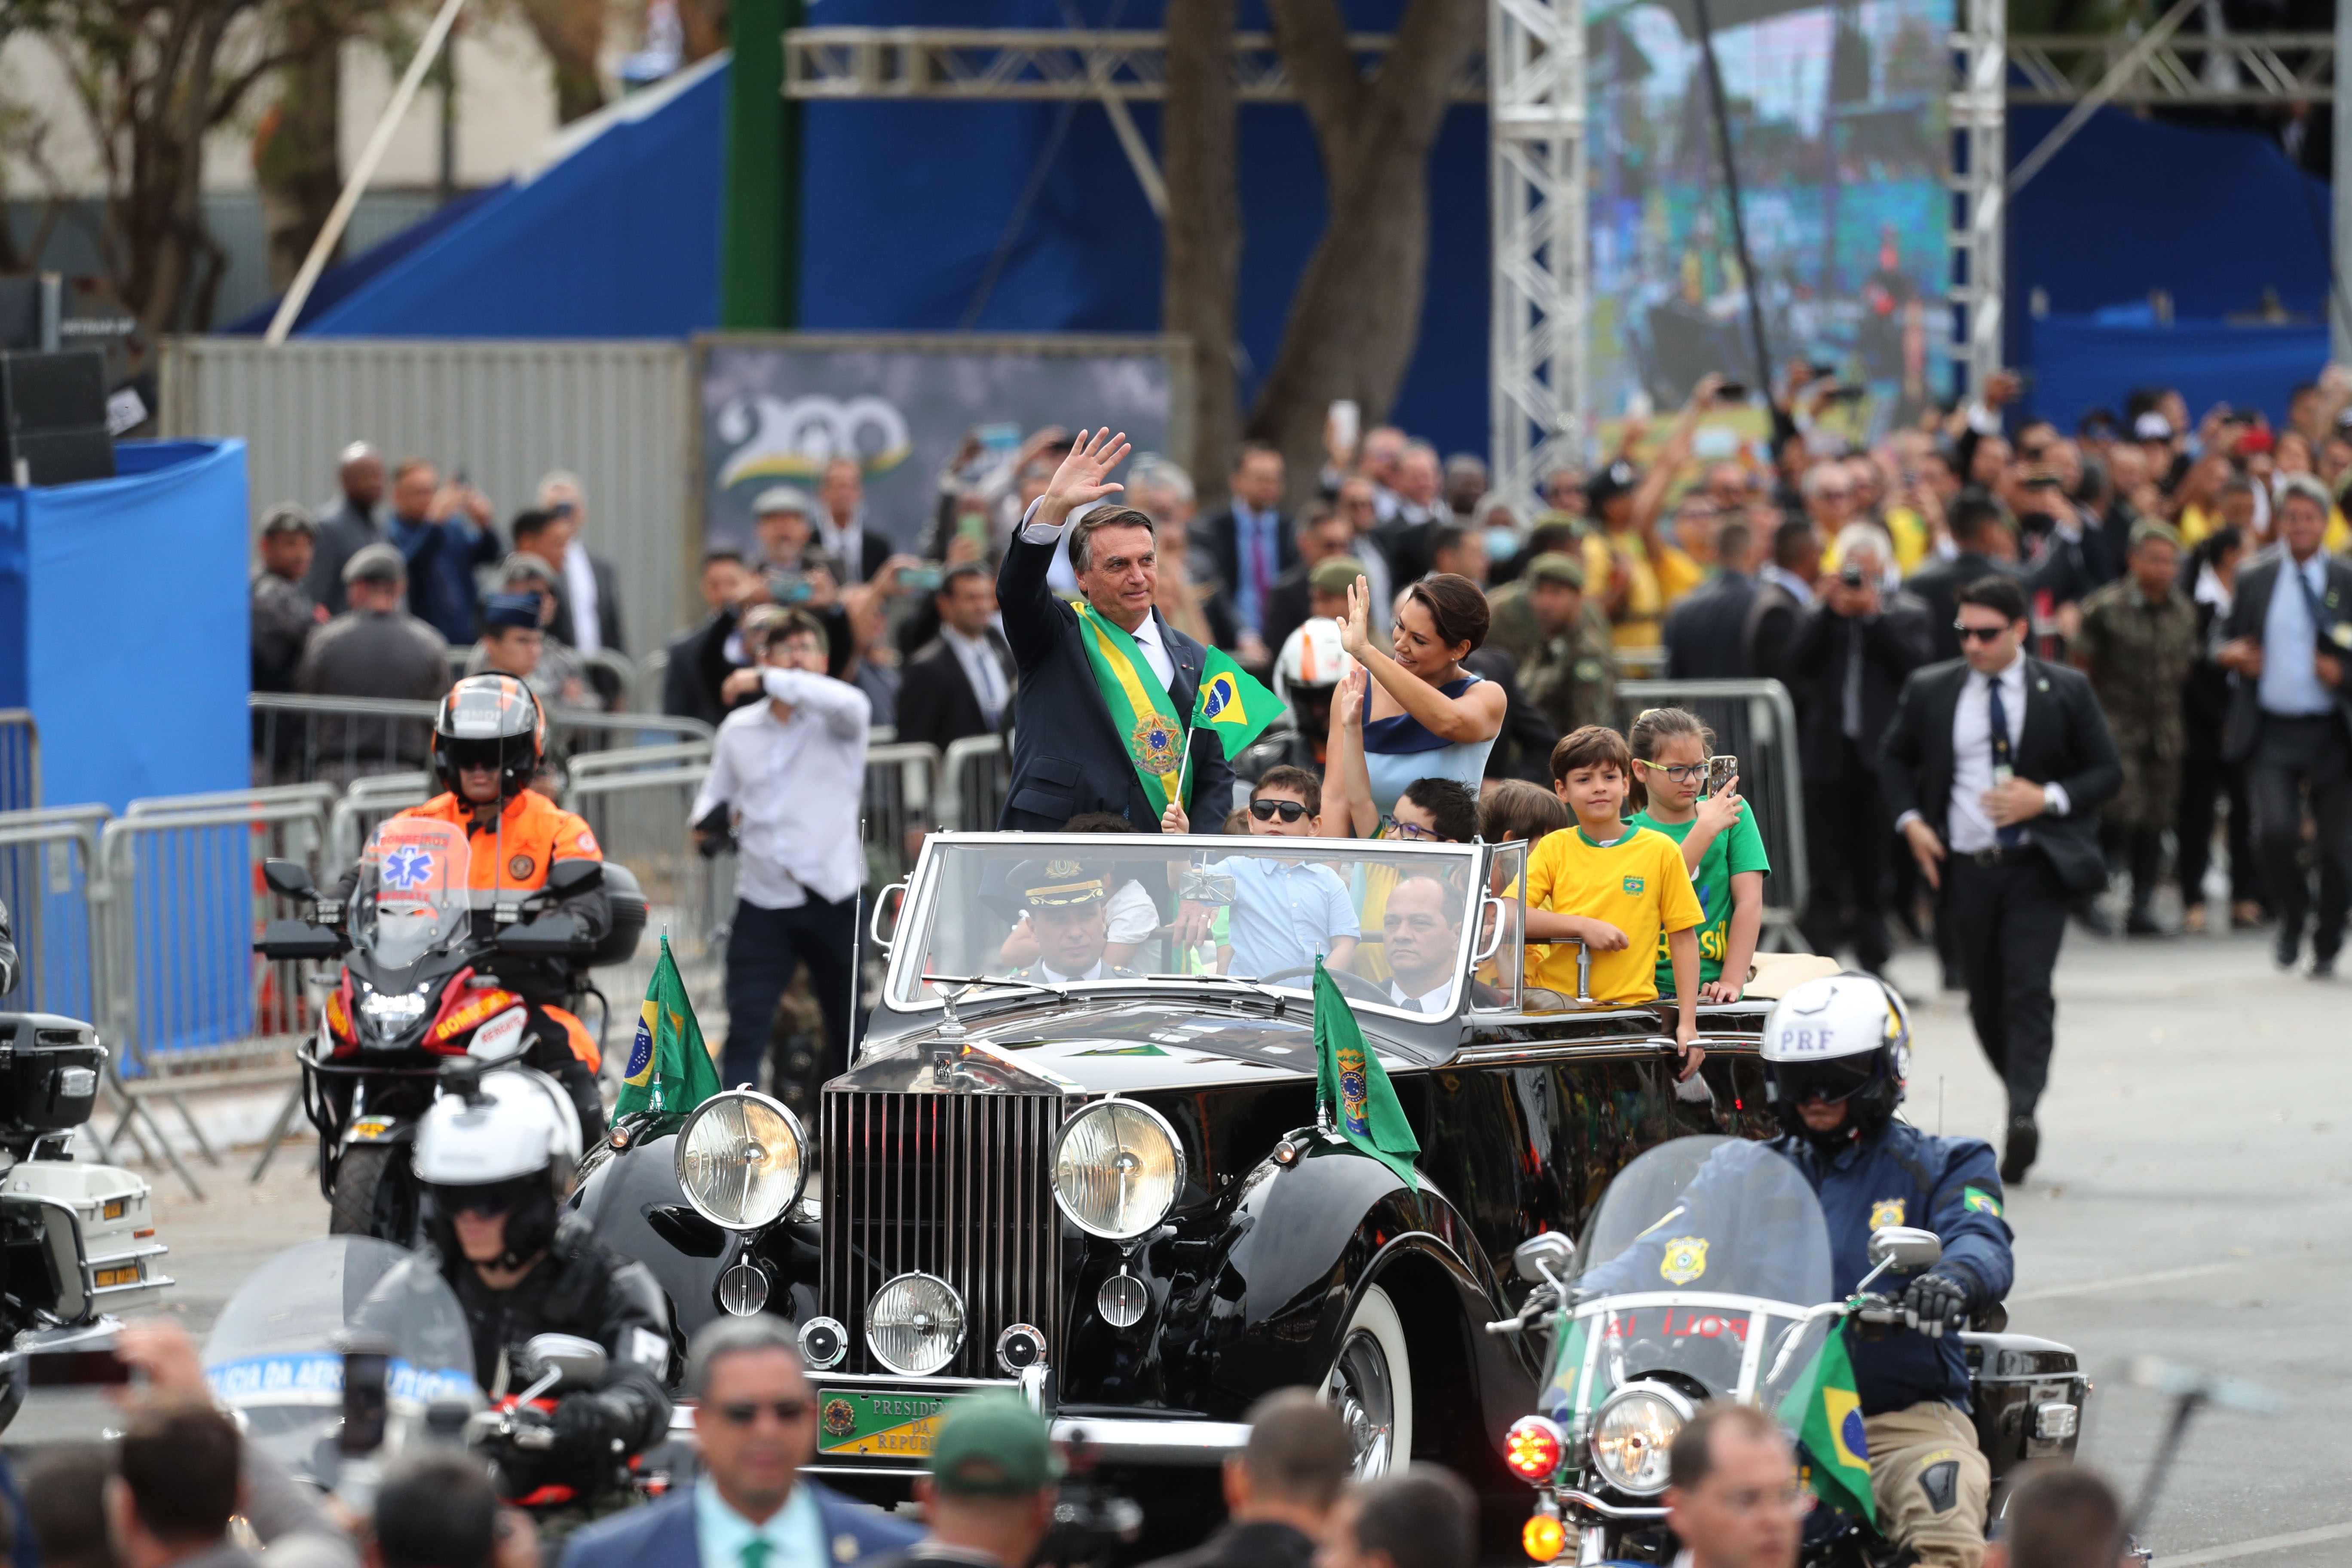 7SET: Desfile cívico-militar é o ponto alto da Semana da Pátria em Brasília  - DefesaNet